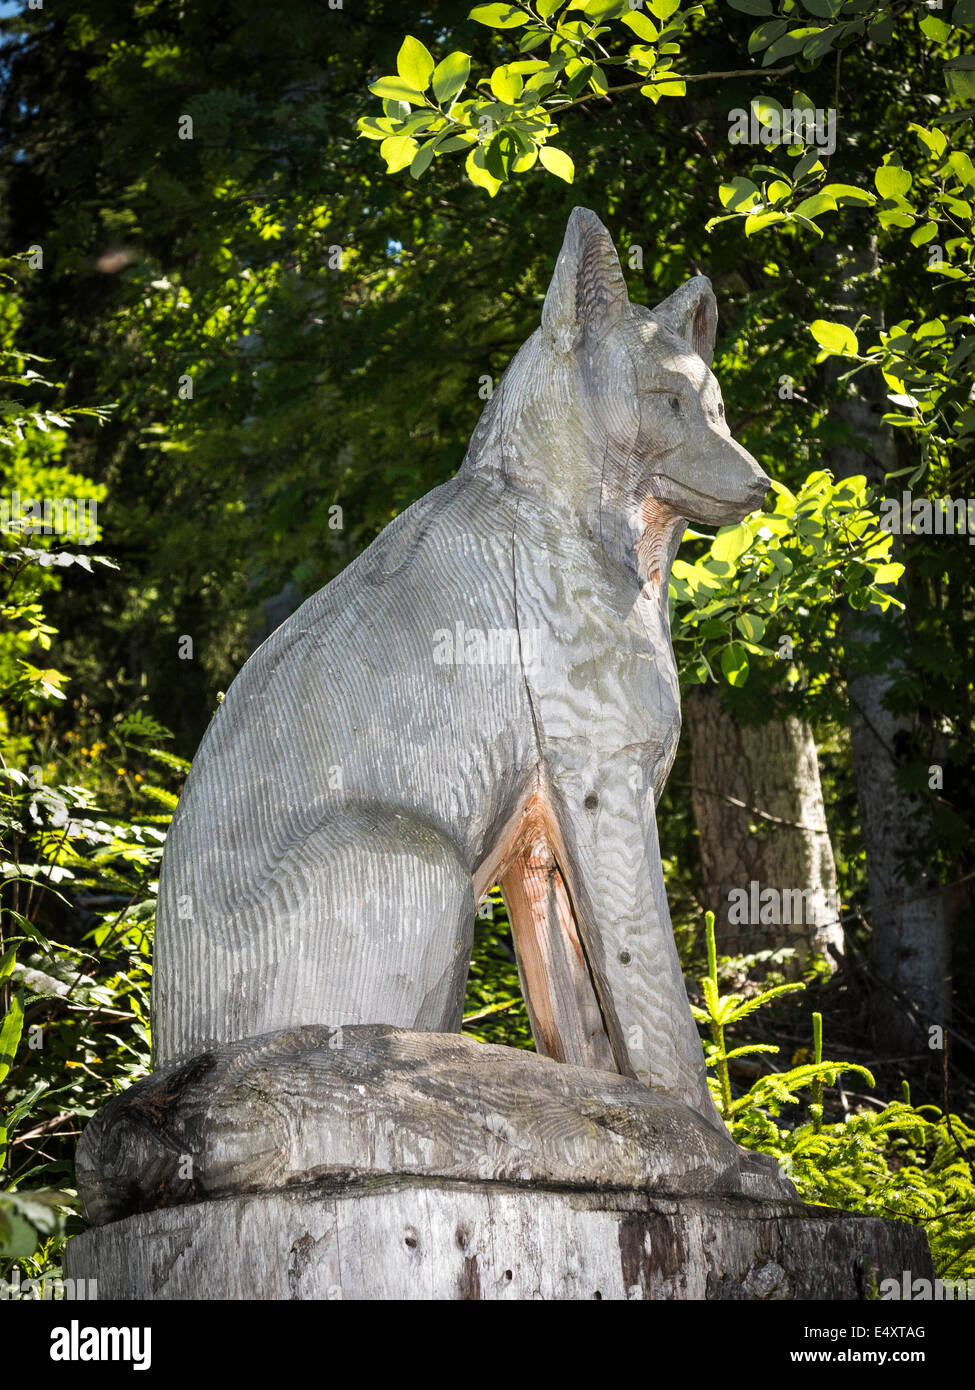 Eine hölzerne Skulptur von einem Fuchs (oder vielleicht Wolf), geschnitzt  aus einem Baumstamm entlang einem Naturlehrpfad in der Schweiz  Stockfotografie - Alamy